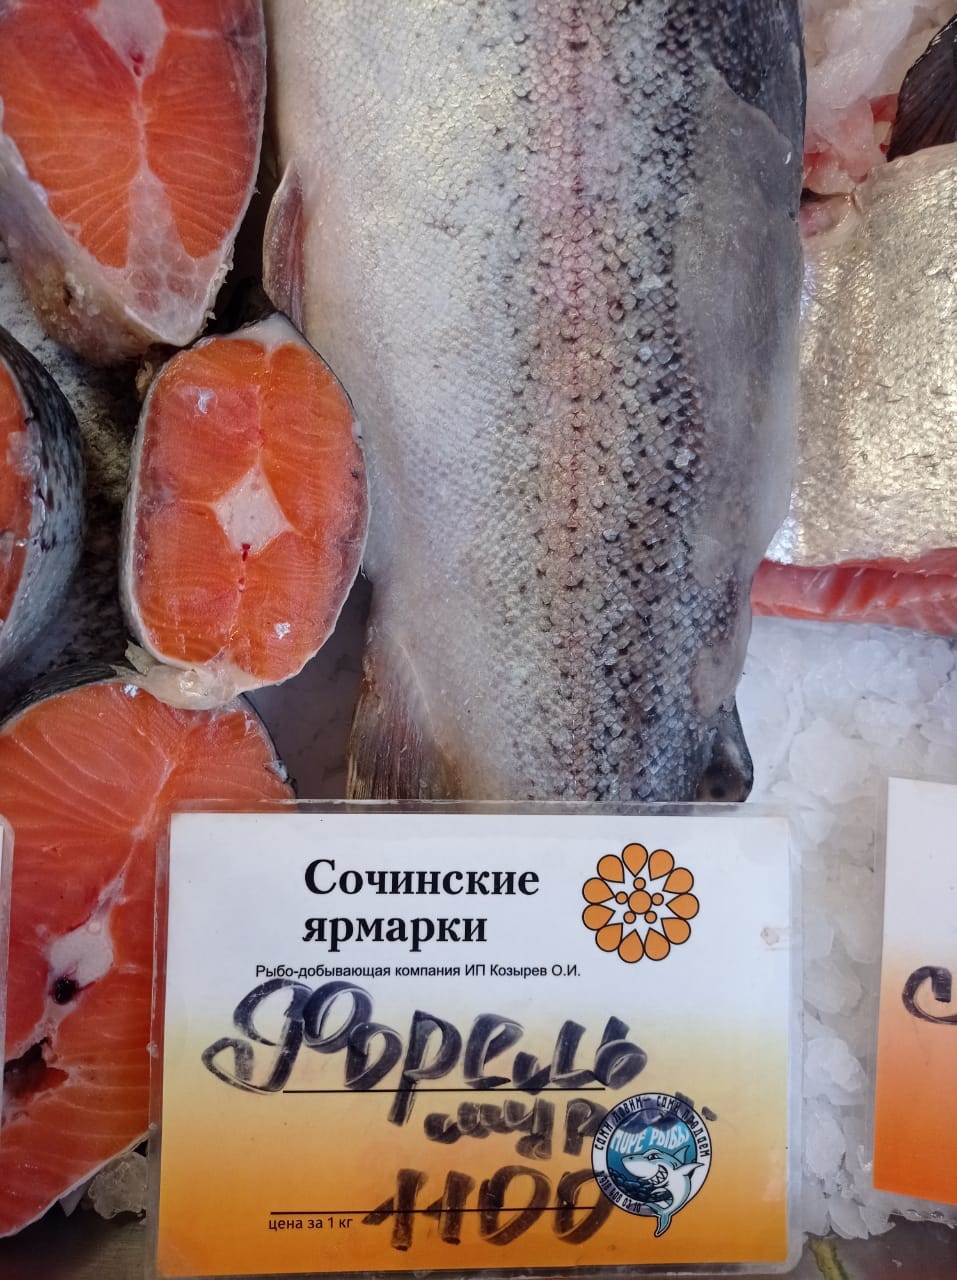 В Сочи сбежали 300 тонн форели, но цена на красную рыбу не изменилась